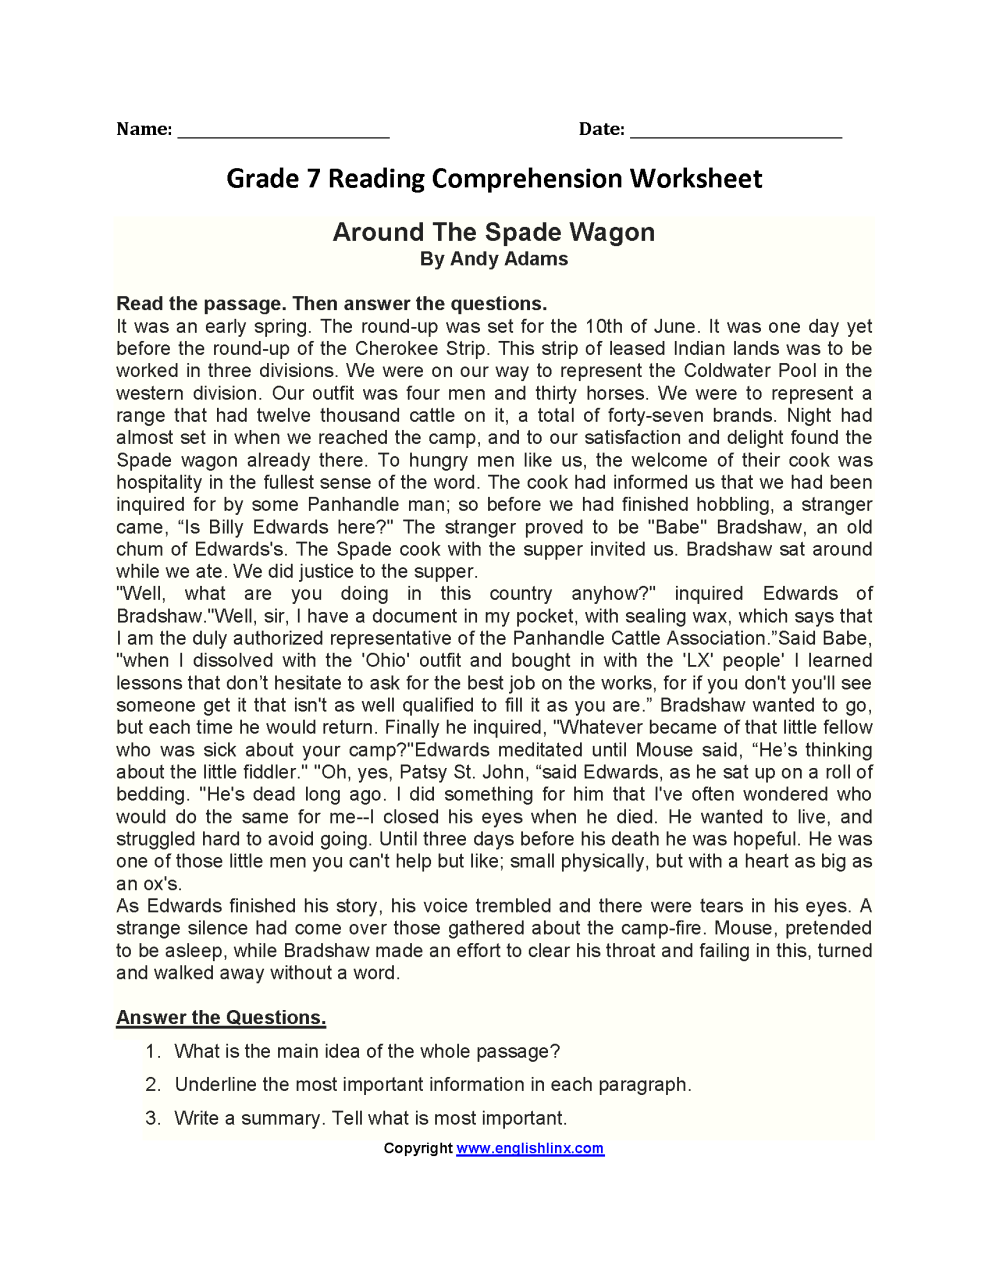 Grade 7 Reading Comprehension Worksheets Pdf Free